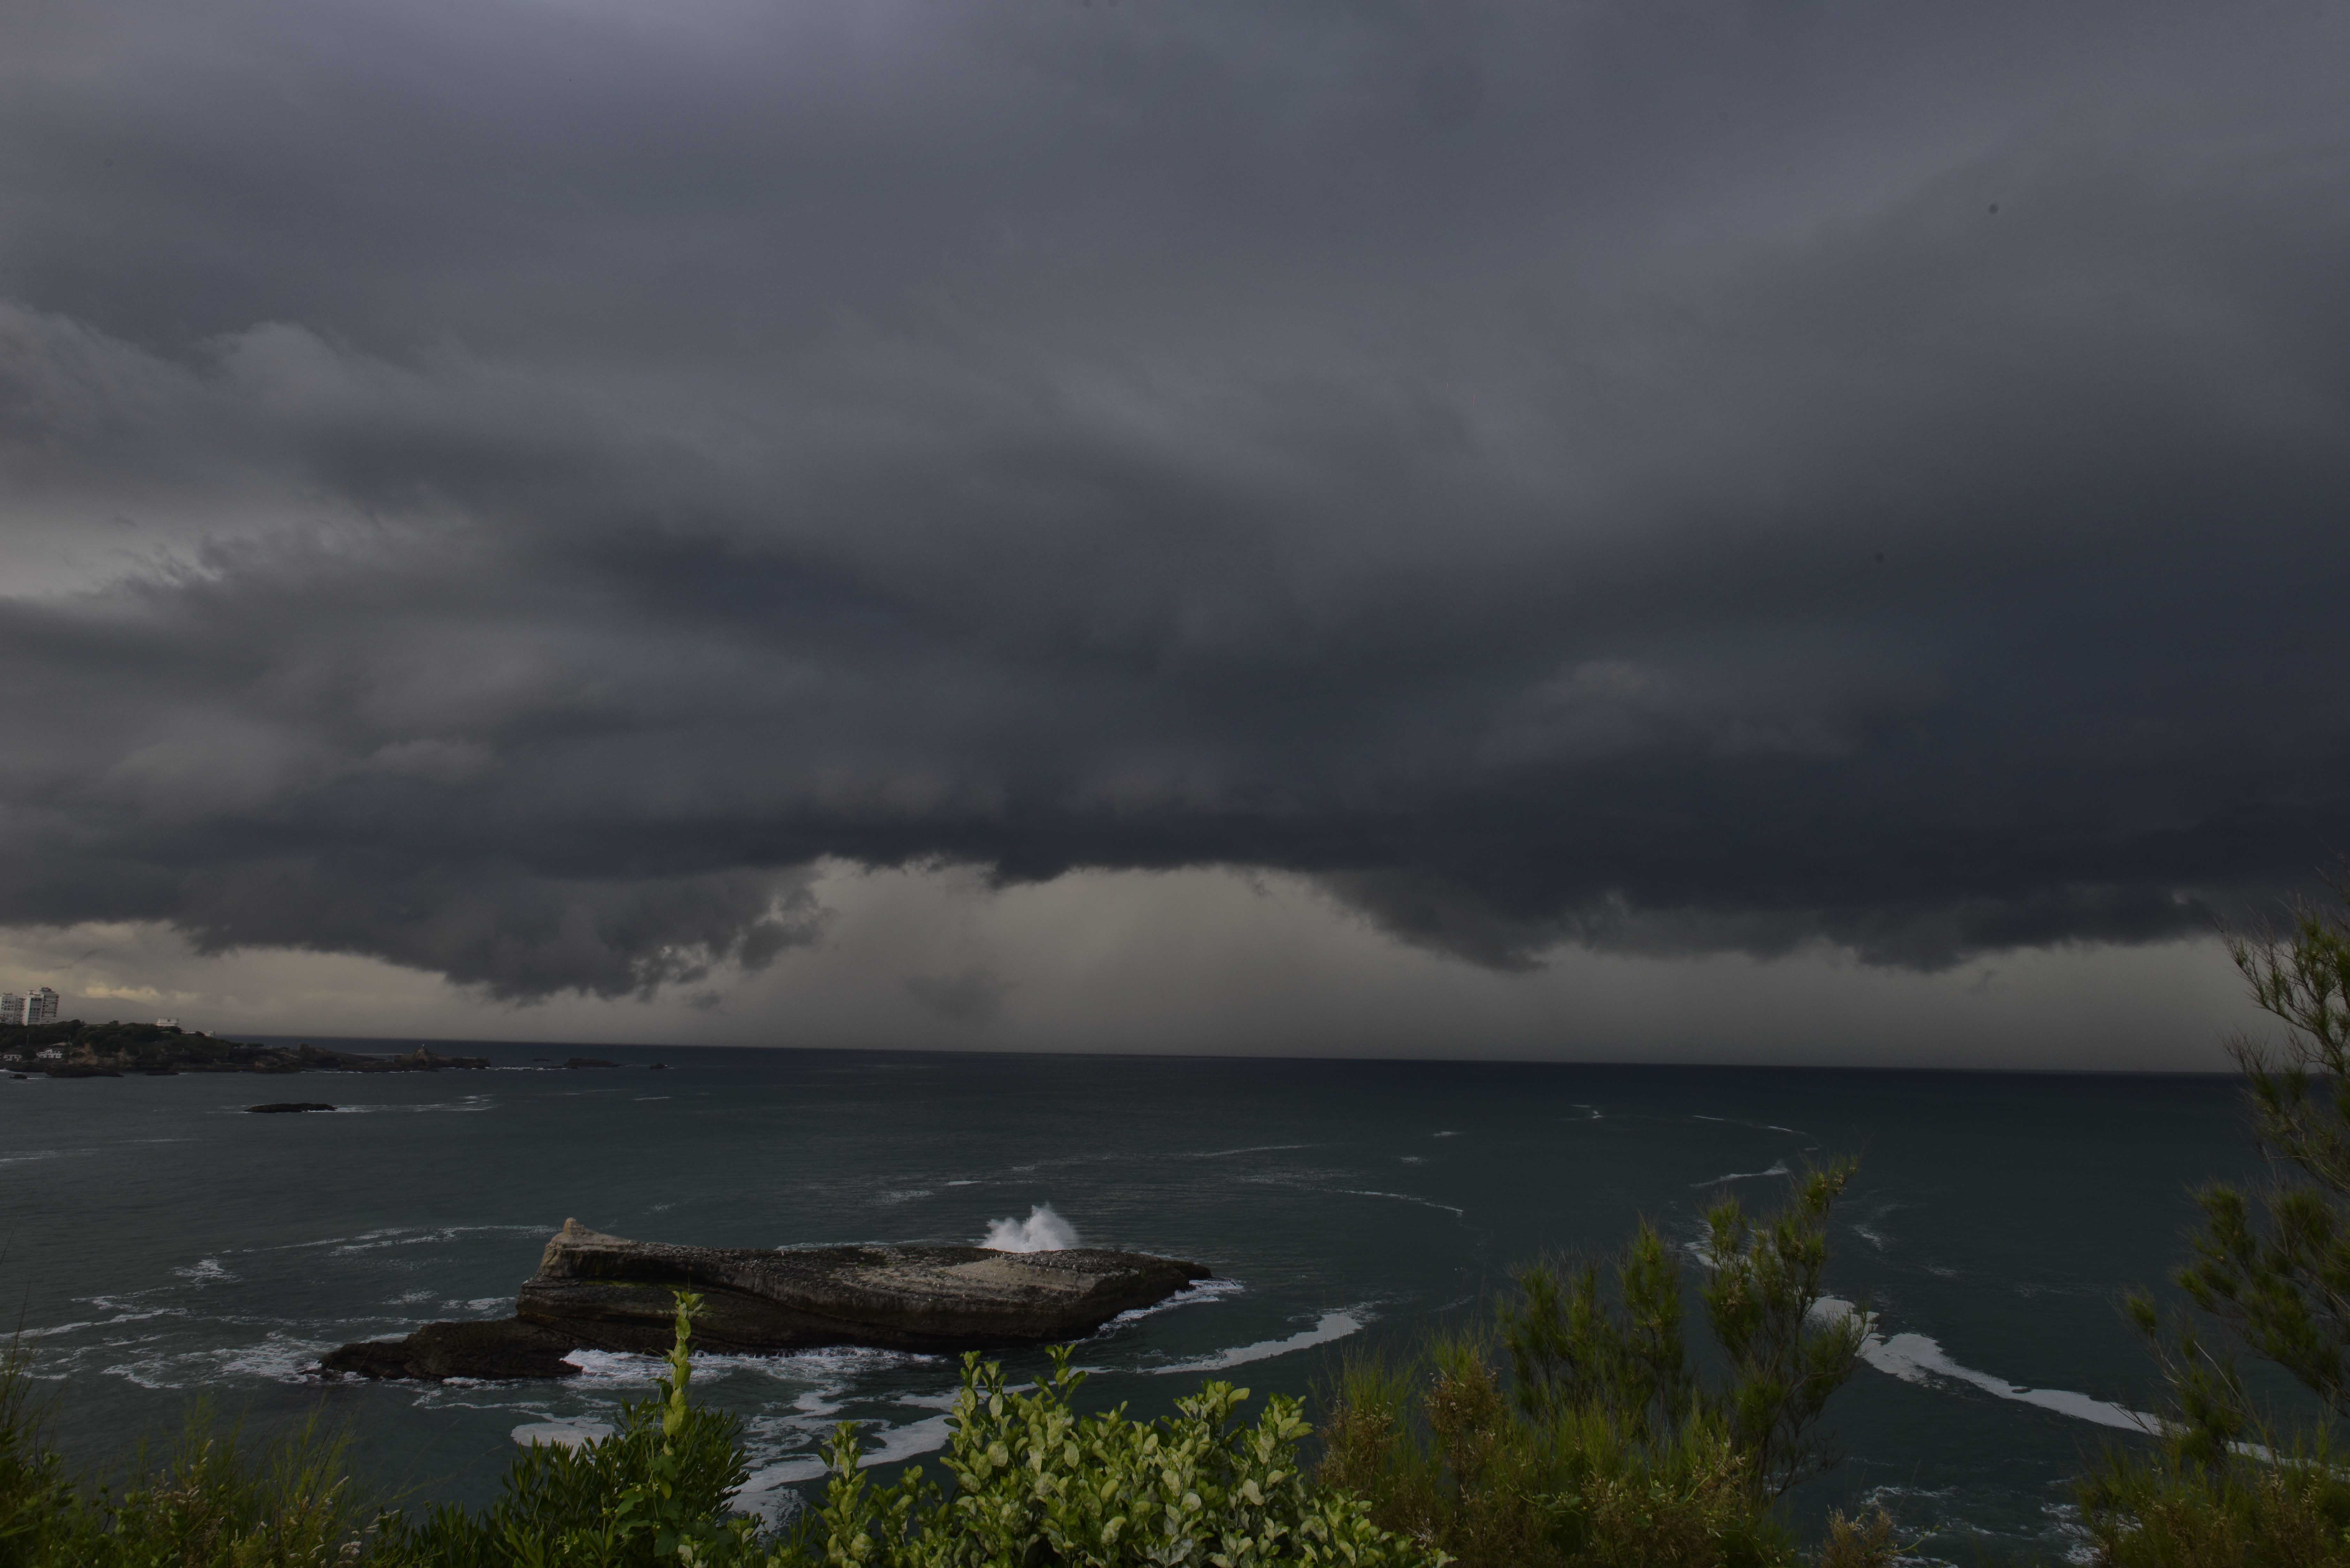 cellule isolé au large de Biarritz. Une rotation à été observé pendant 10 min avant de ce dissiper. - 10/06/2018 19:00 - paul JULIEN